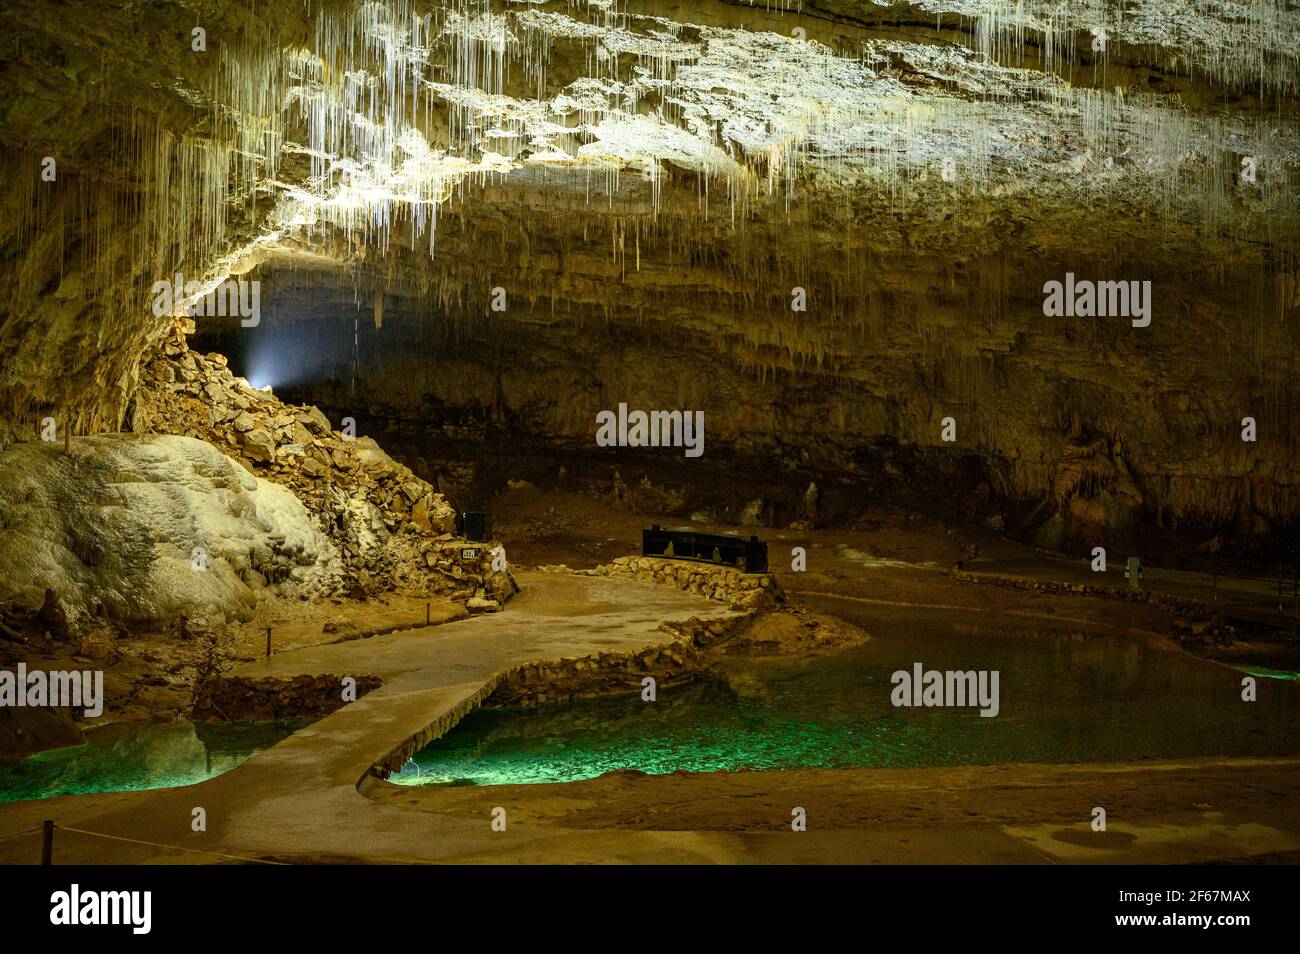 Passerelle avec pont au-dessus de l'eau verte émeraude dans une grotte décorée de stalactites. Vercors, France. Banque D'Images